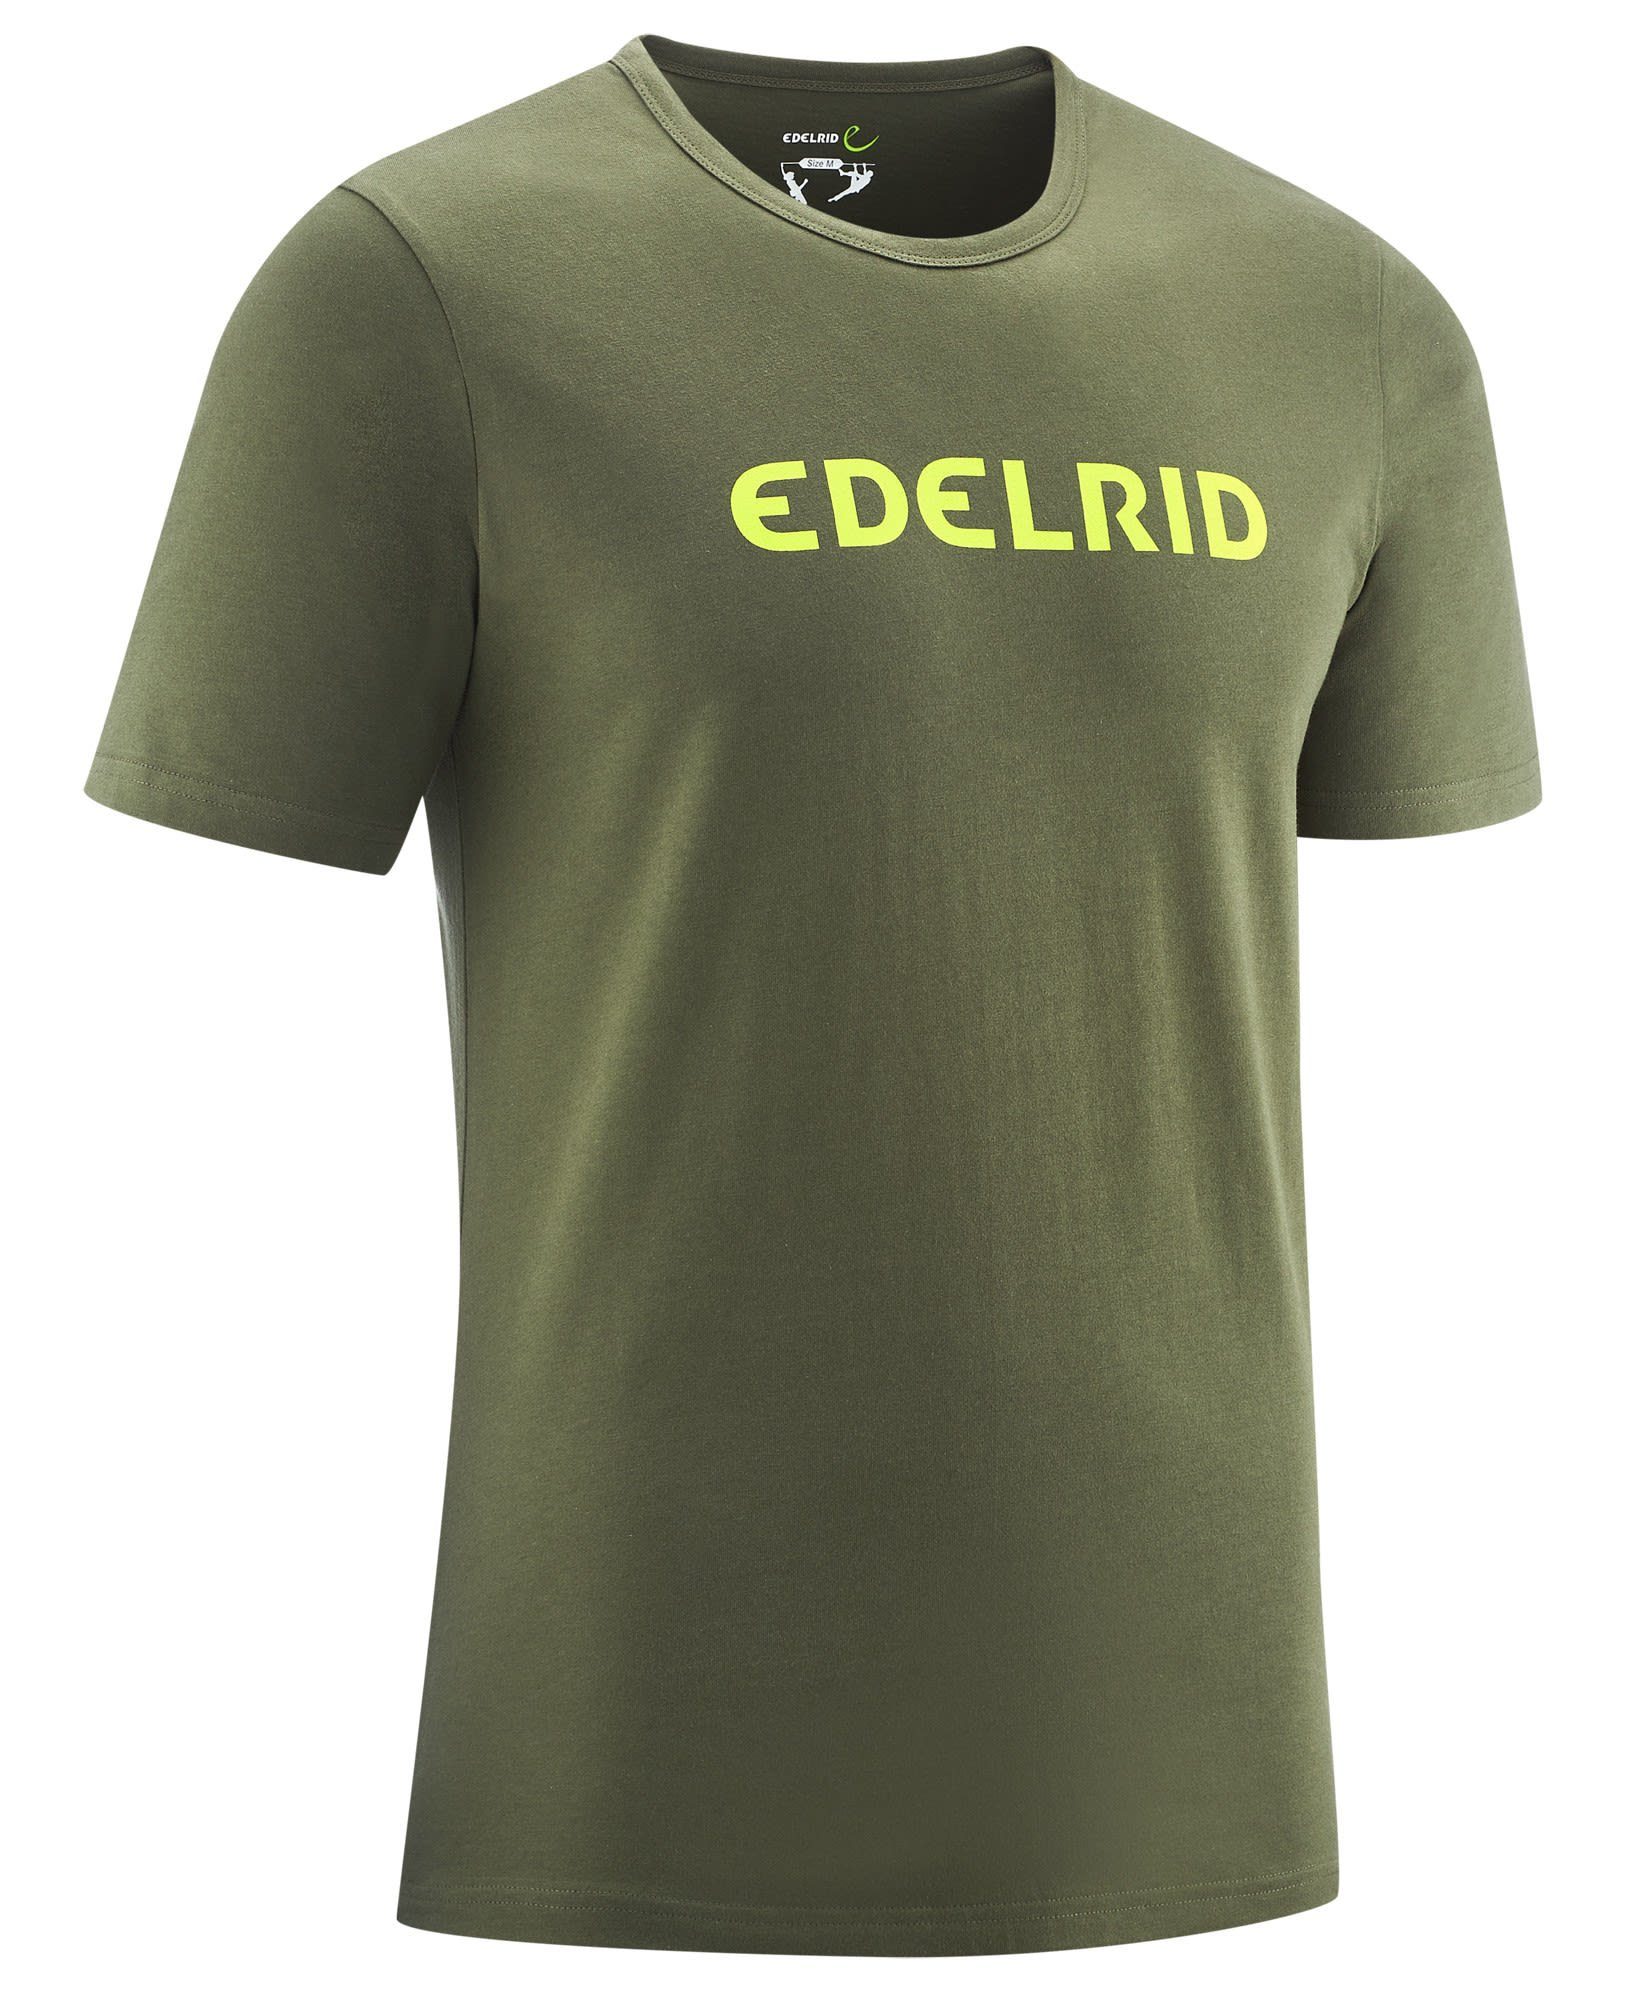 Edelrid T-Shirt Edelrid M Corporate T-shirt Herren Kurzarm-Shirt Oil